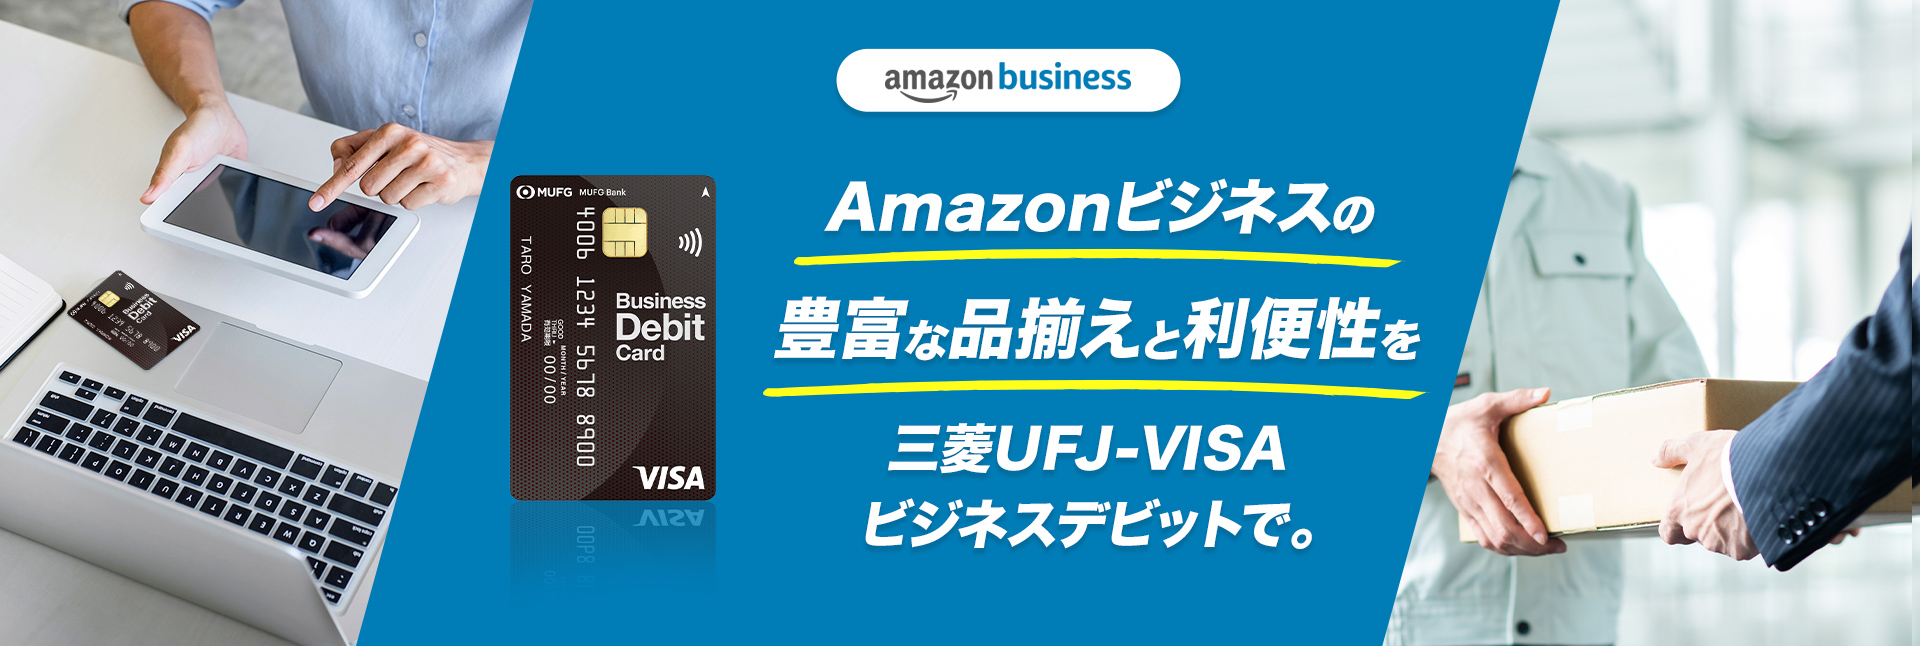 Amazonビジネスの豊富な品揃えと利便性を三菱UFJ-VISAビジネスデビットで。